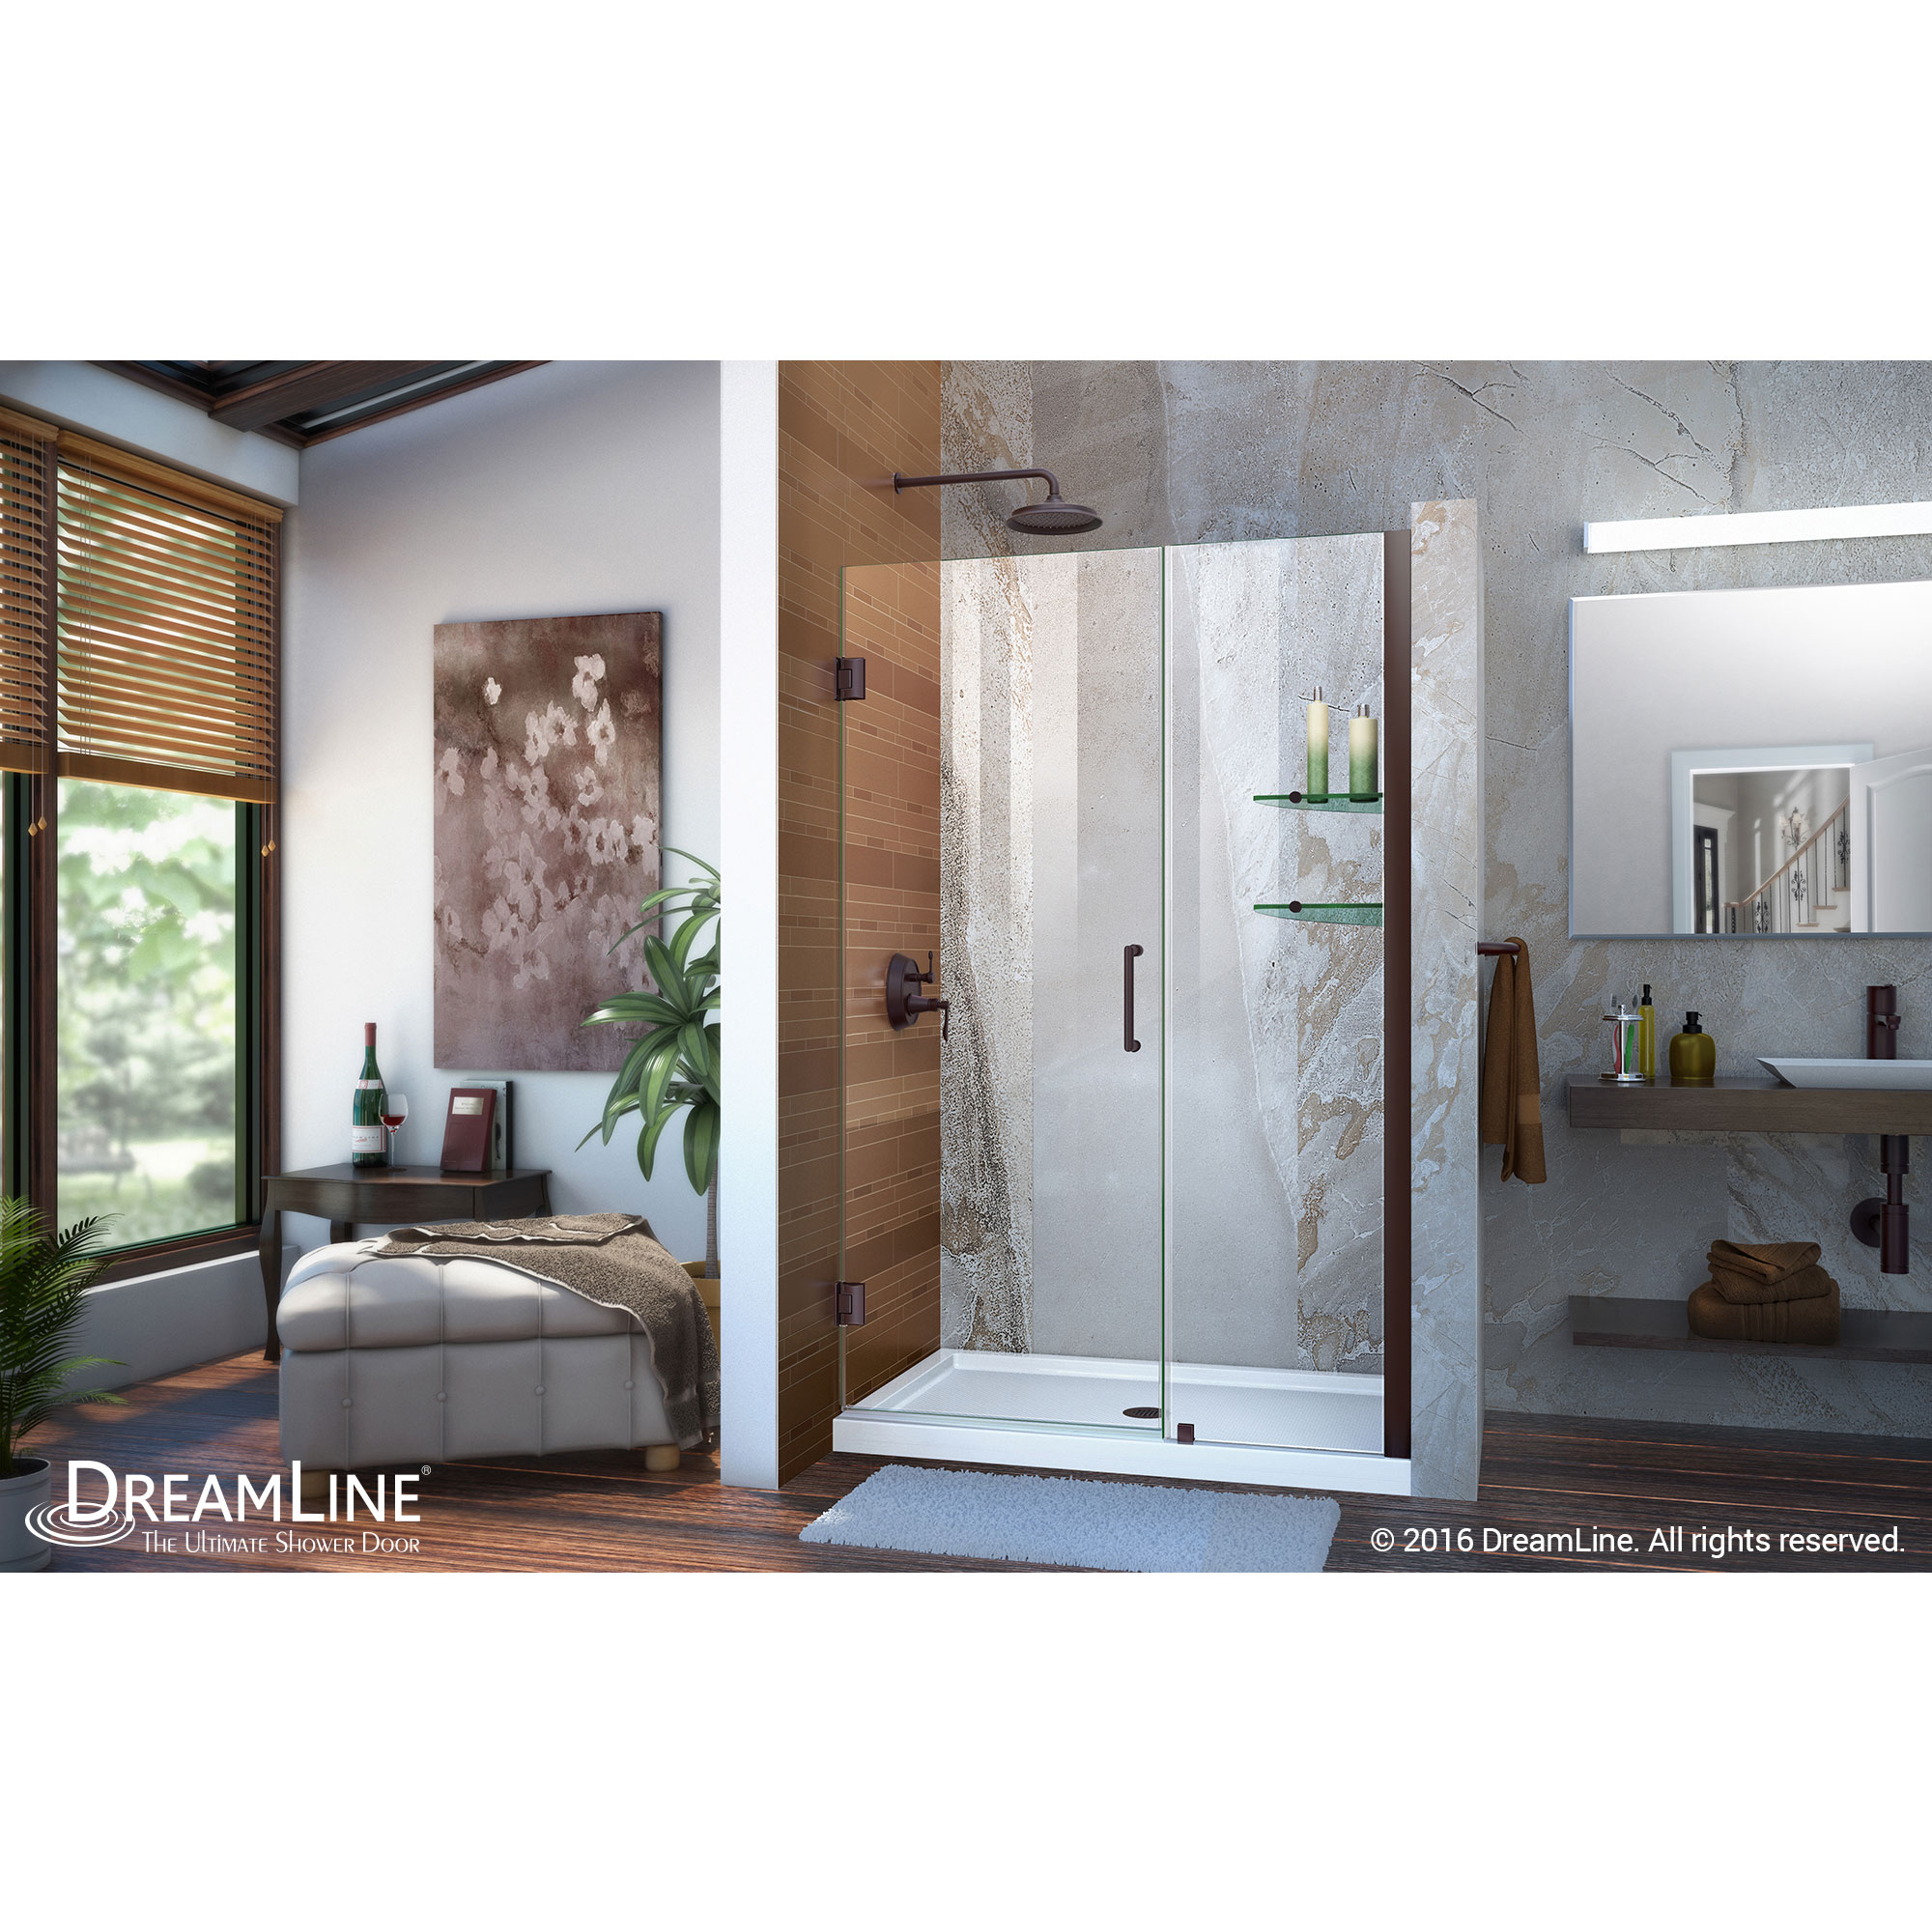 Dreamline SHDR-20457210S-06 Oil Rubbed Bronze 45-46" Shower Door W/ Shelves